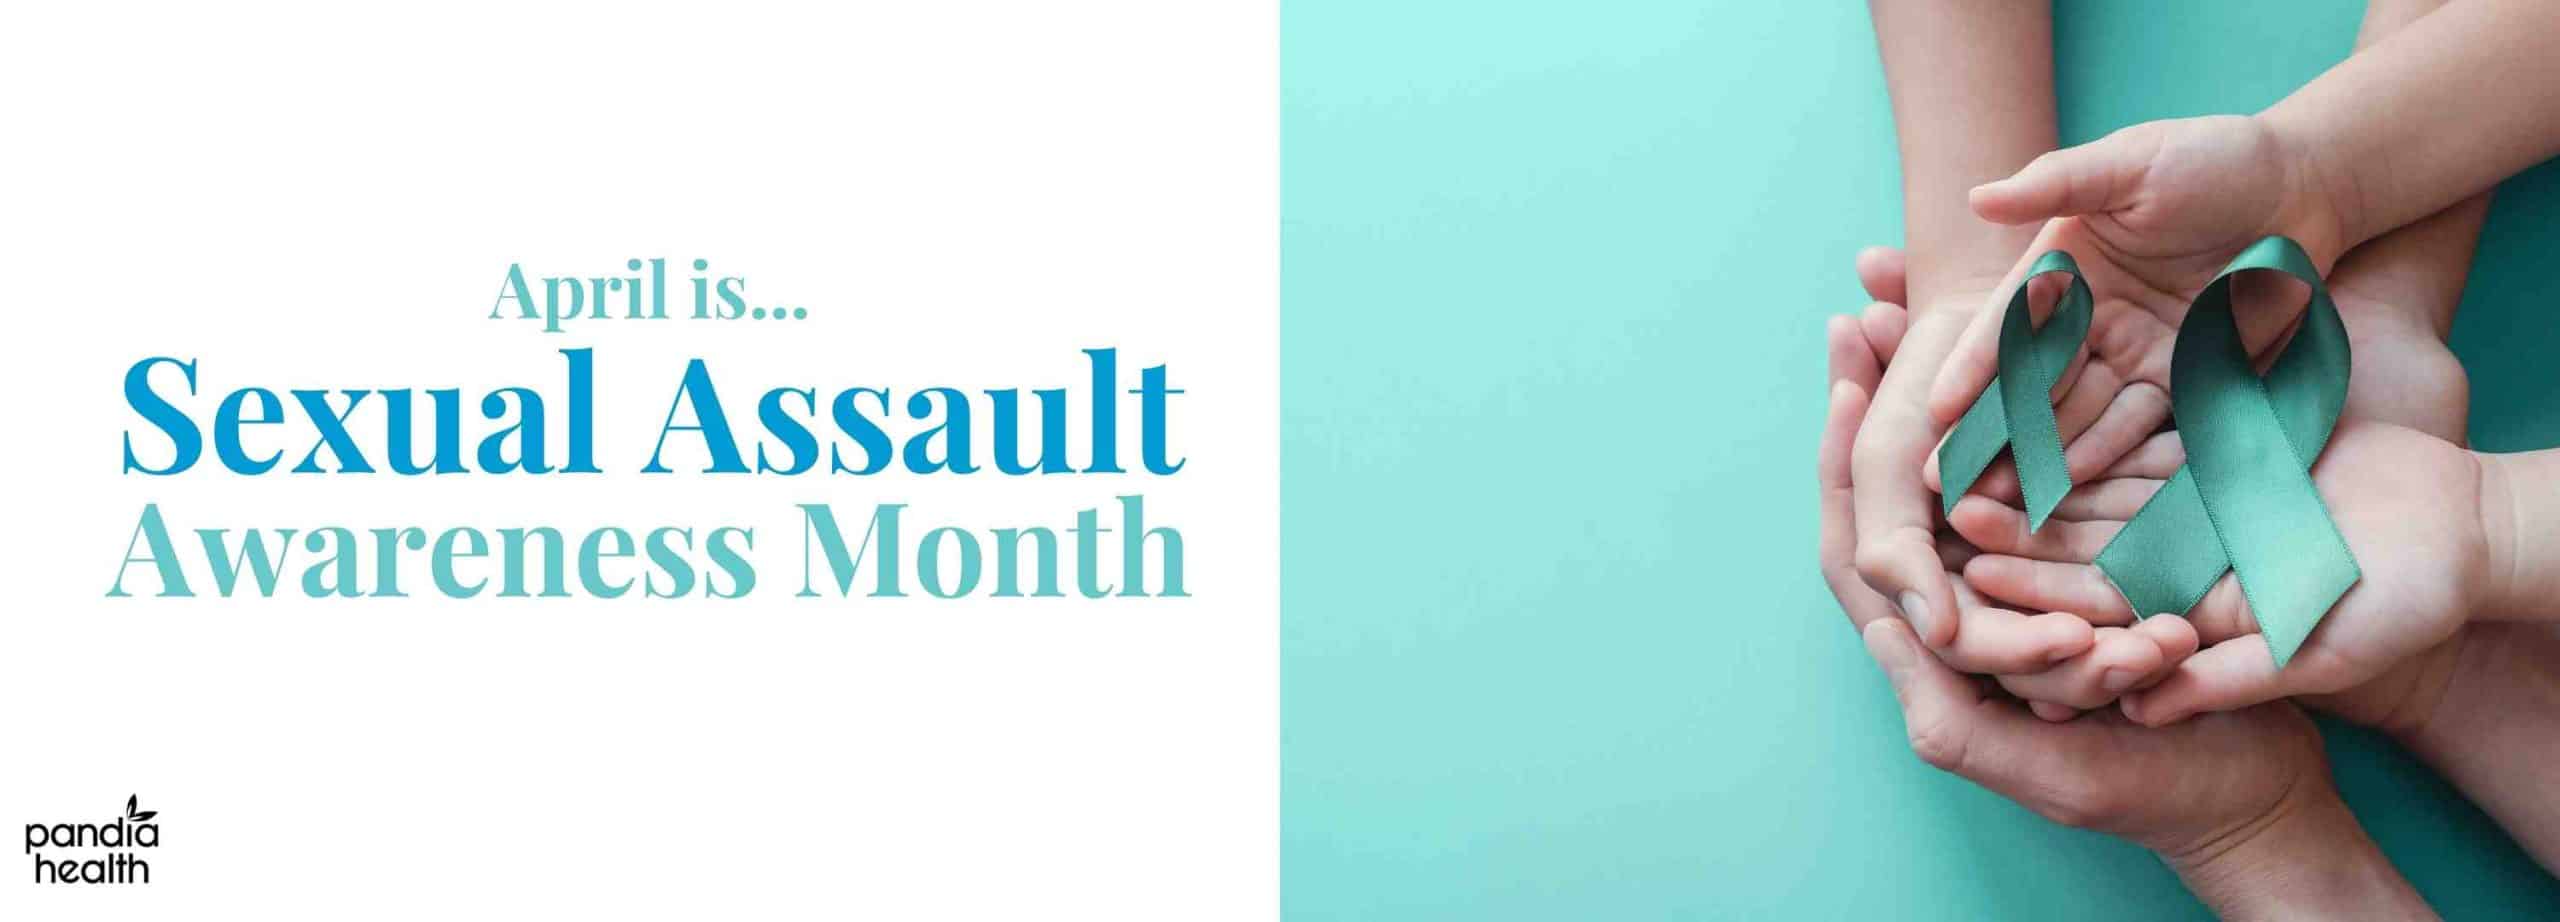 April: National sexual assault awareness month